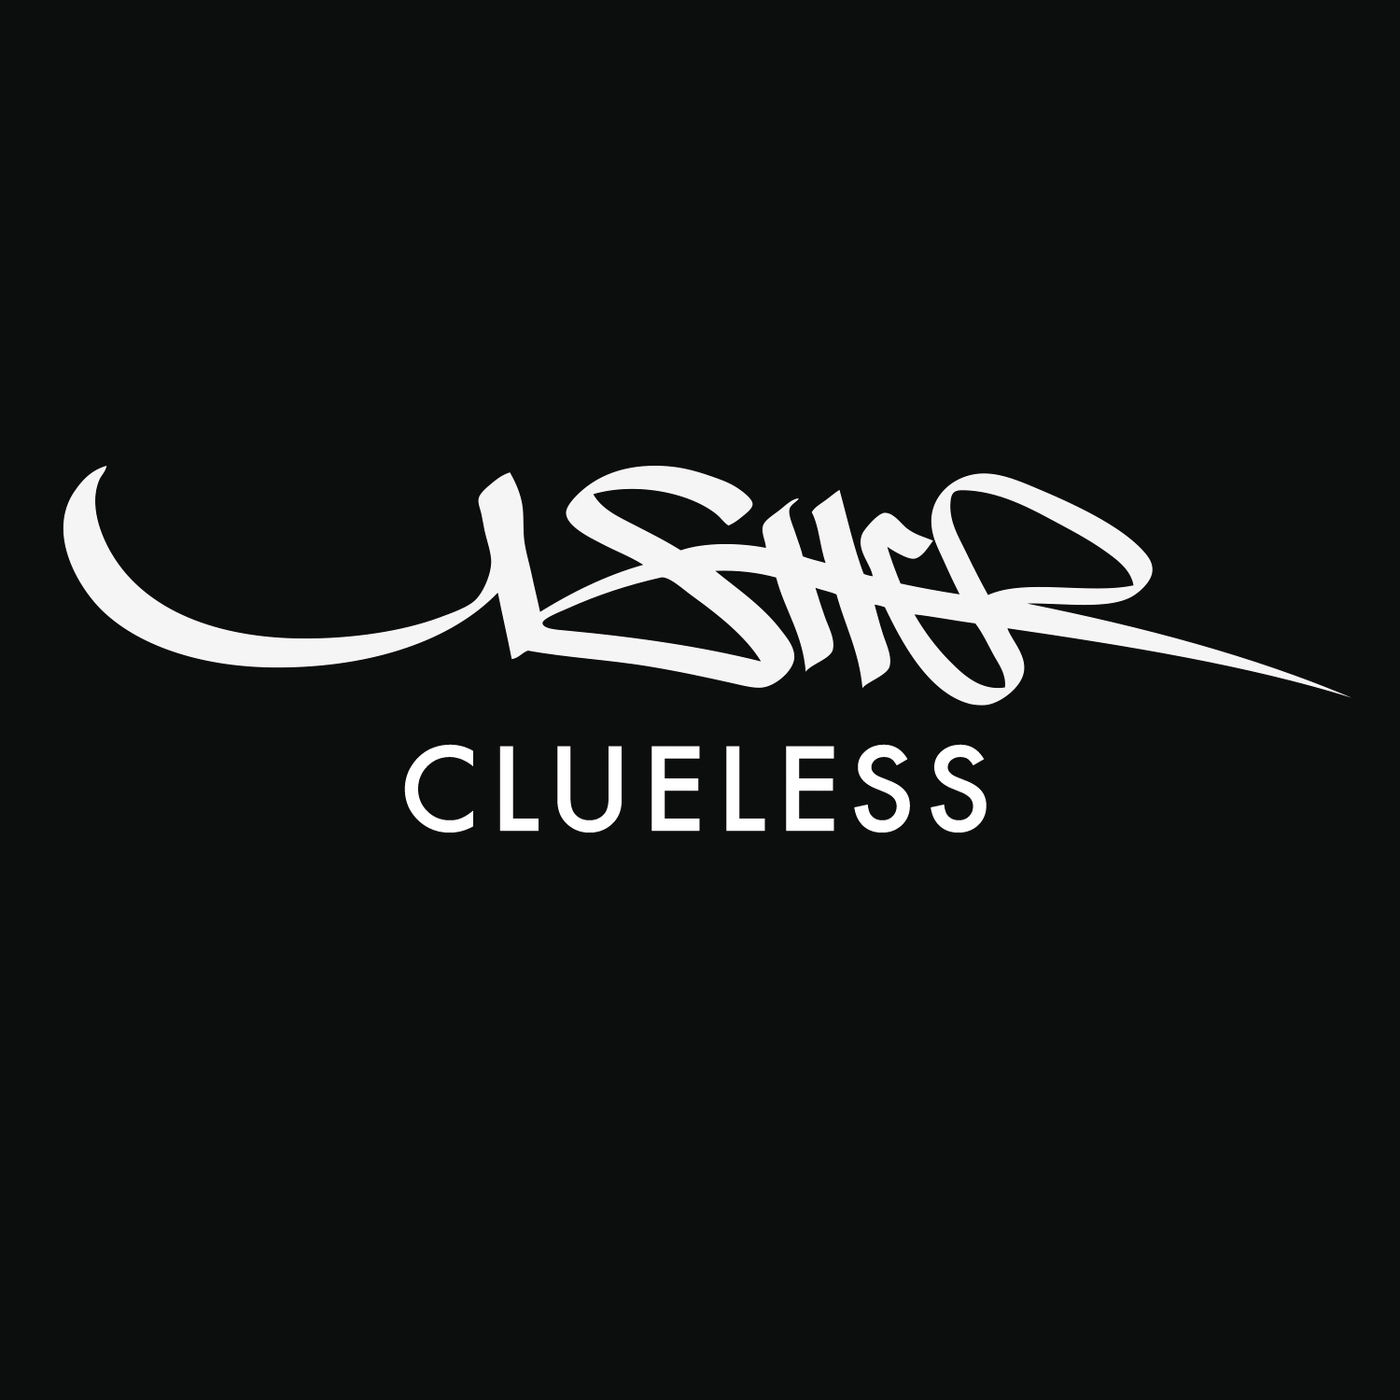 Usher – Clueless【44.1kHz／16bit】英国区-OppsUpro音乐帝国